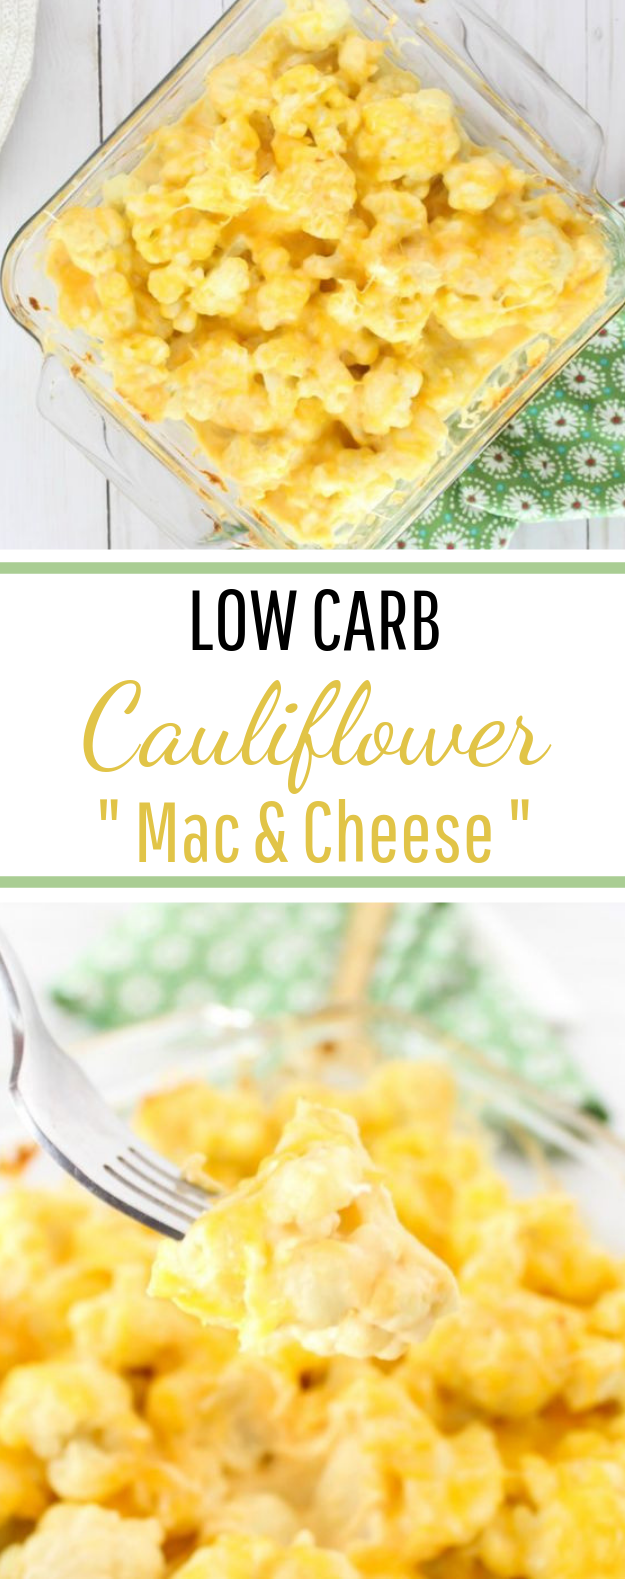 Cheesy Cauliflower Casserole #LowCarb #Keto 